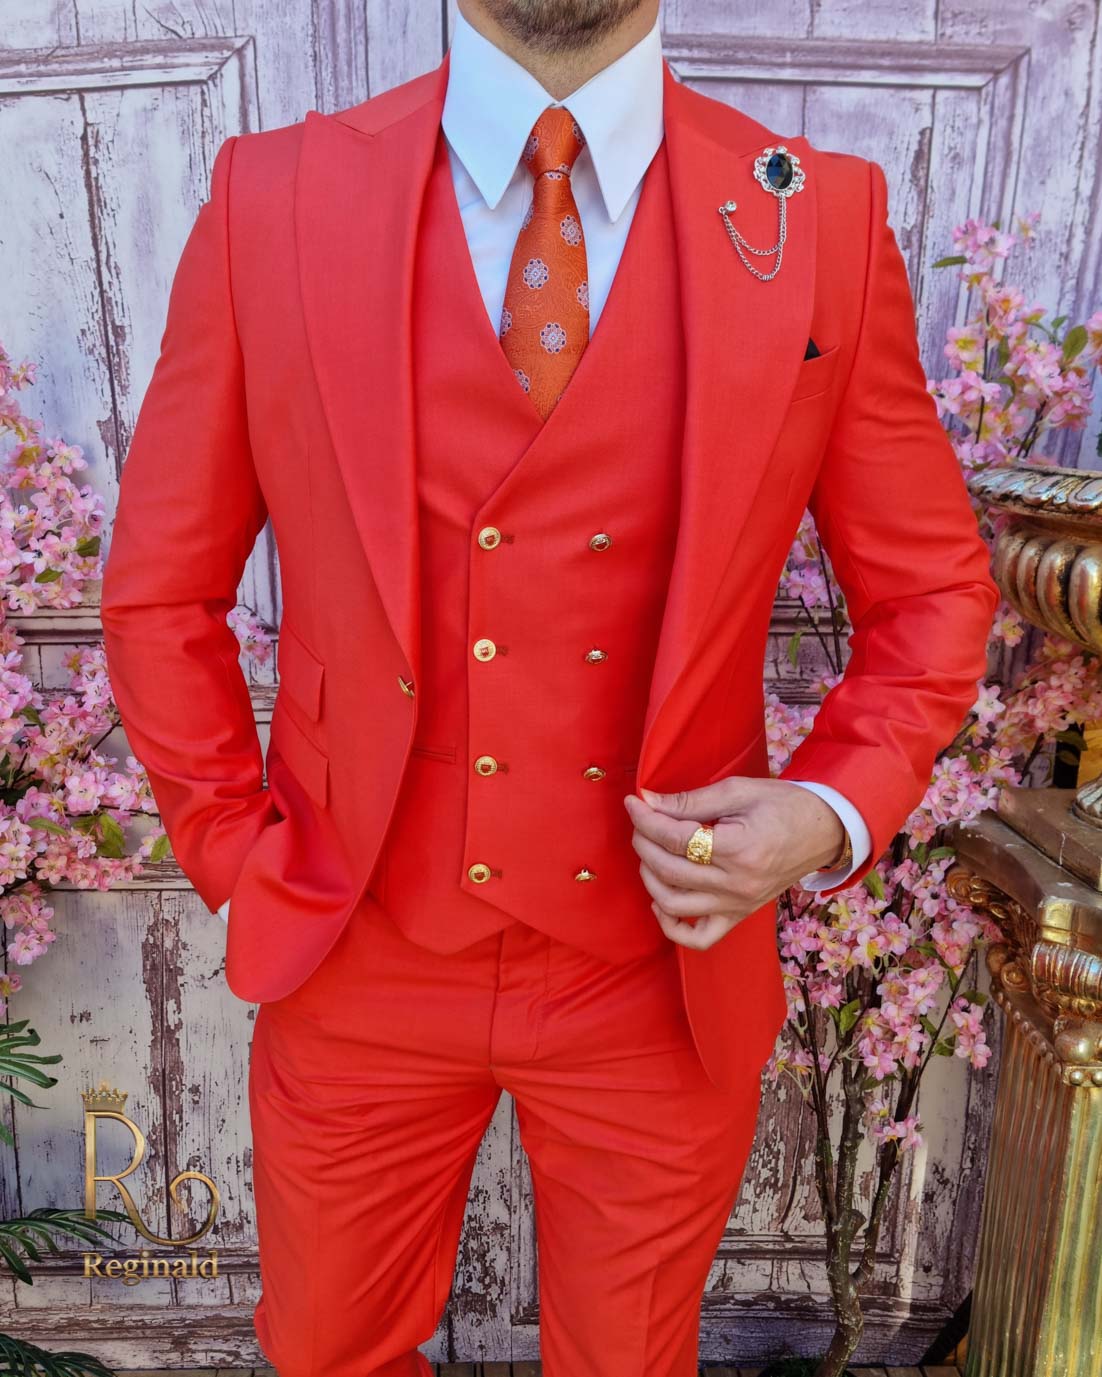 Chaleco de vestir rojo intenso de 4 botones con botones metálicos